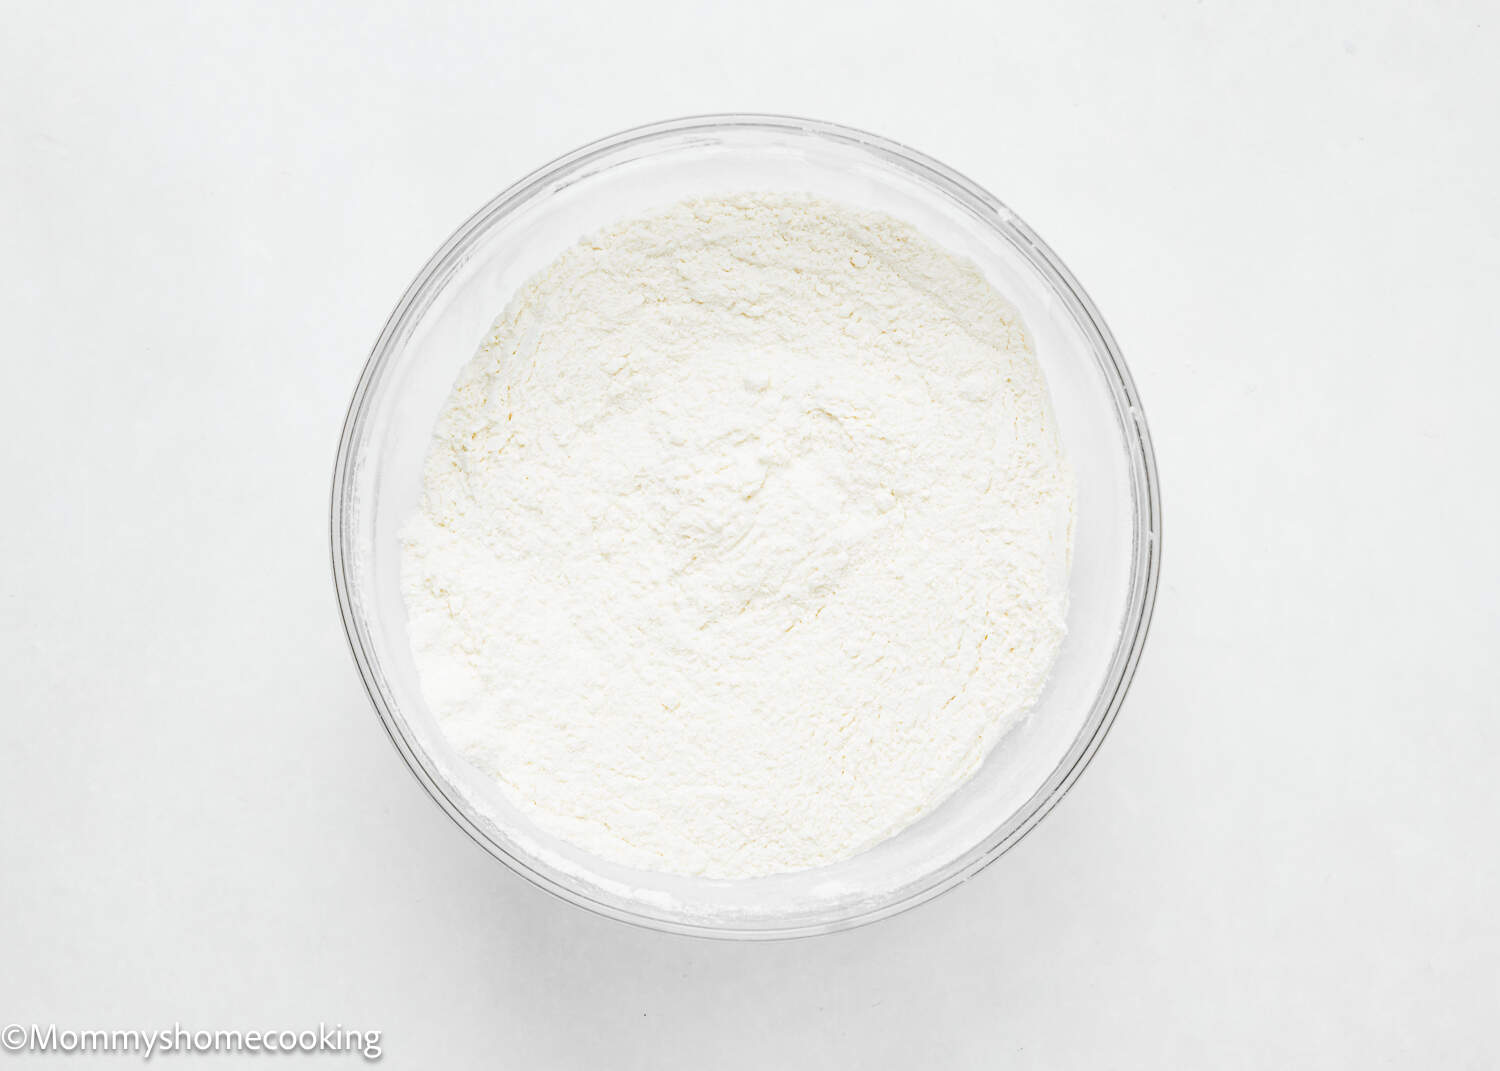 dry ingredients to make vegan Vanilla Cupcakes in a bowl.